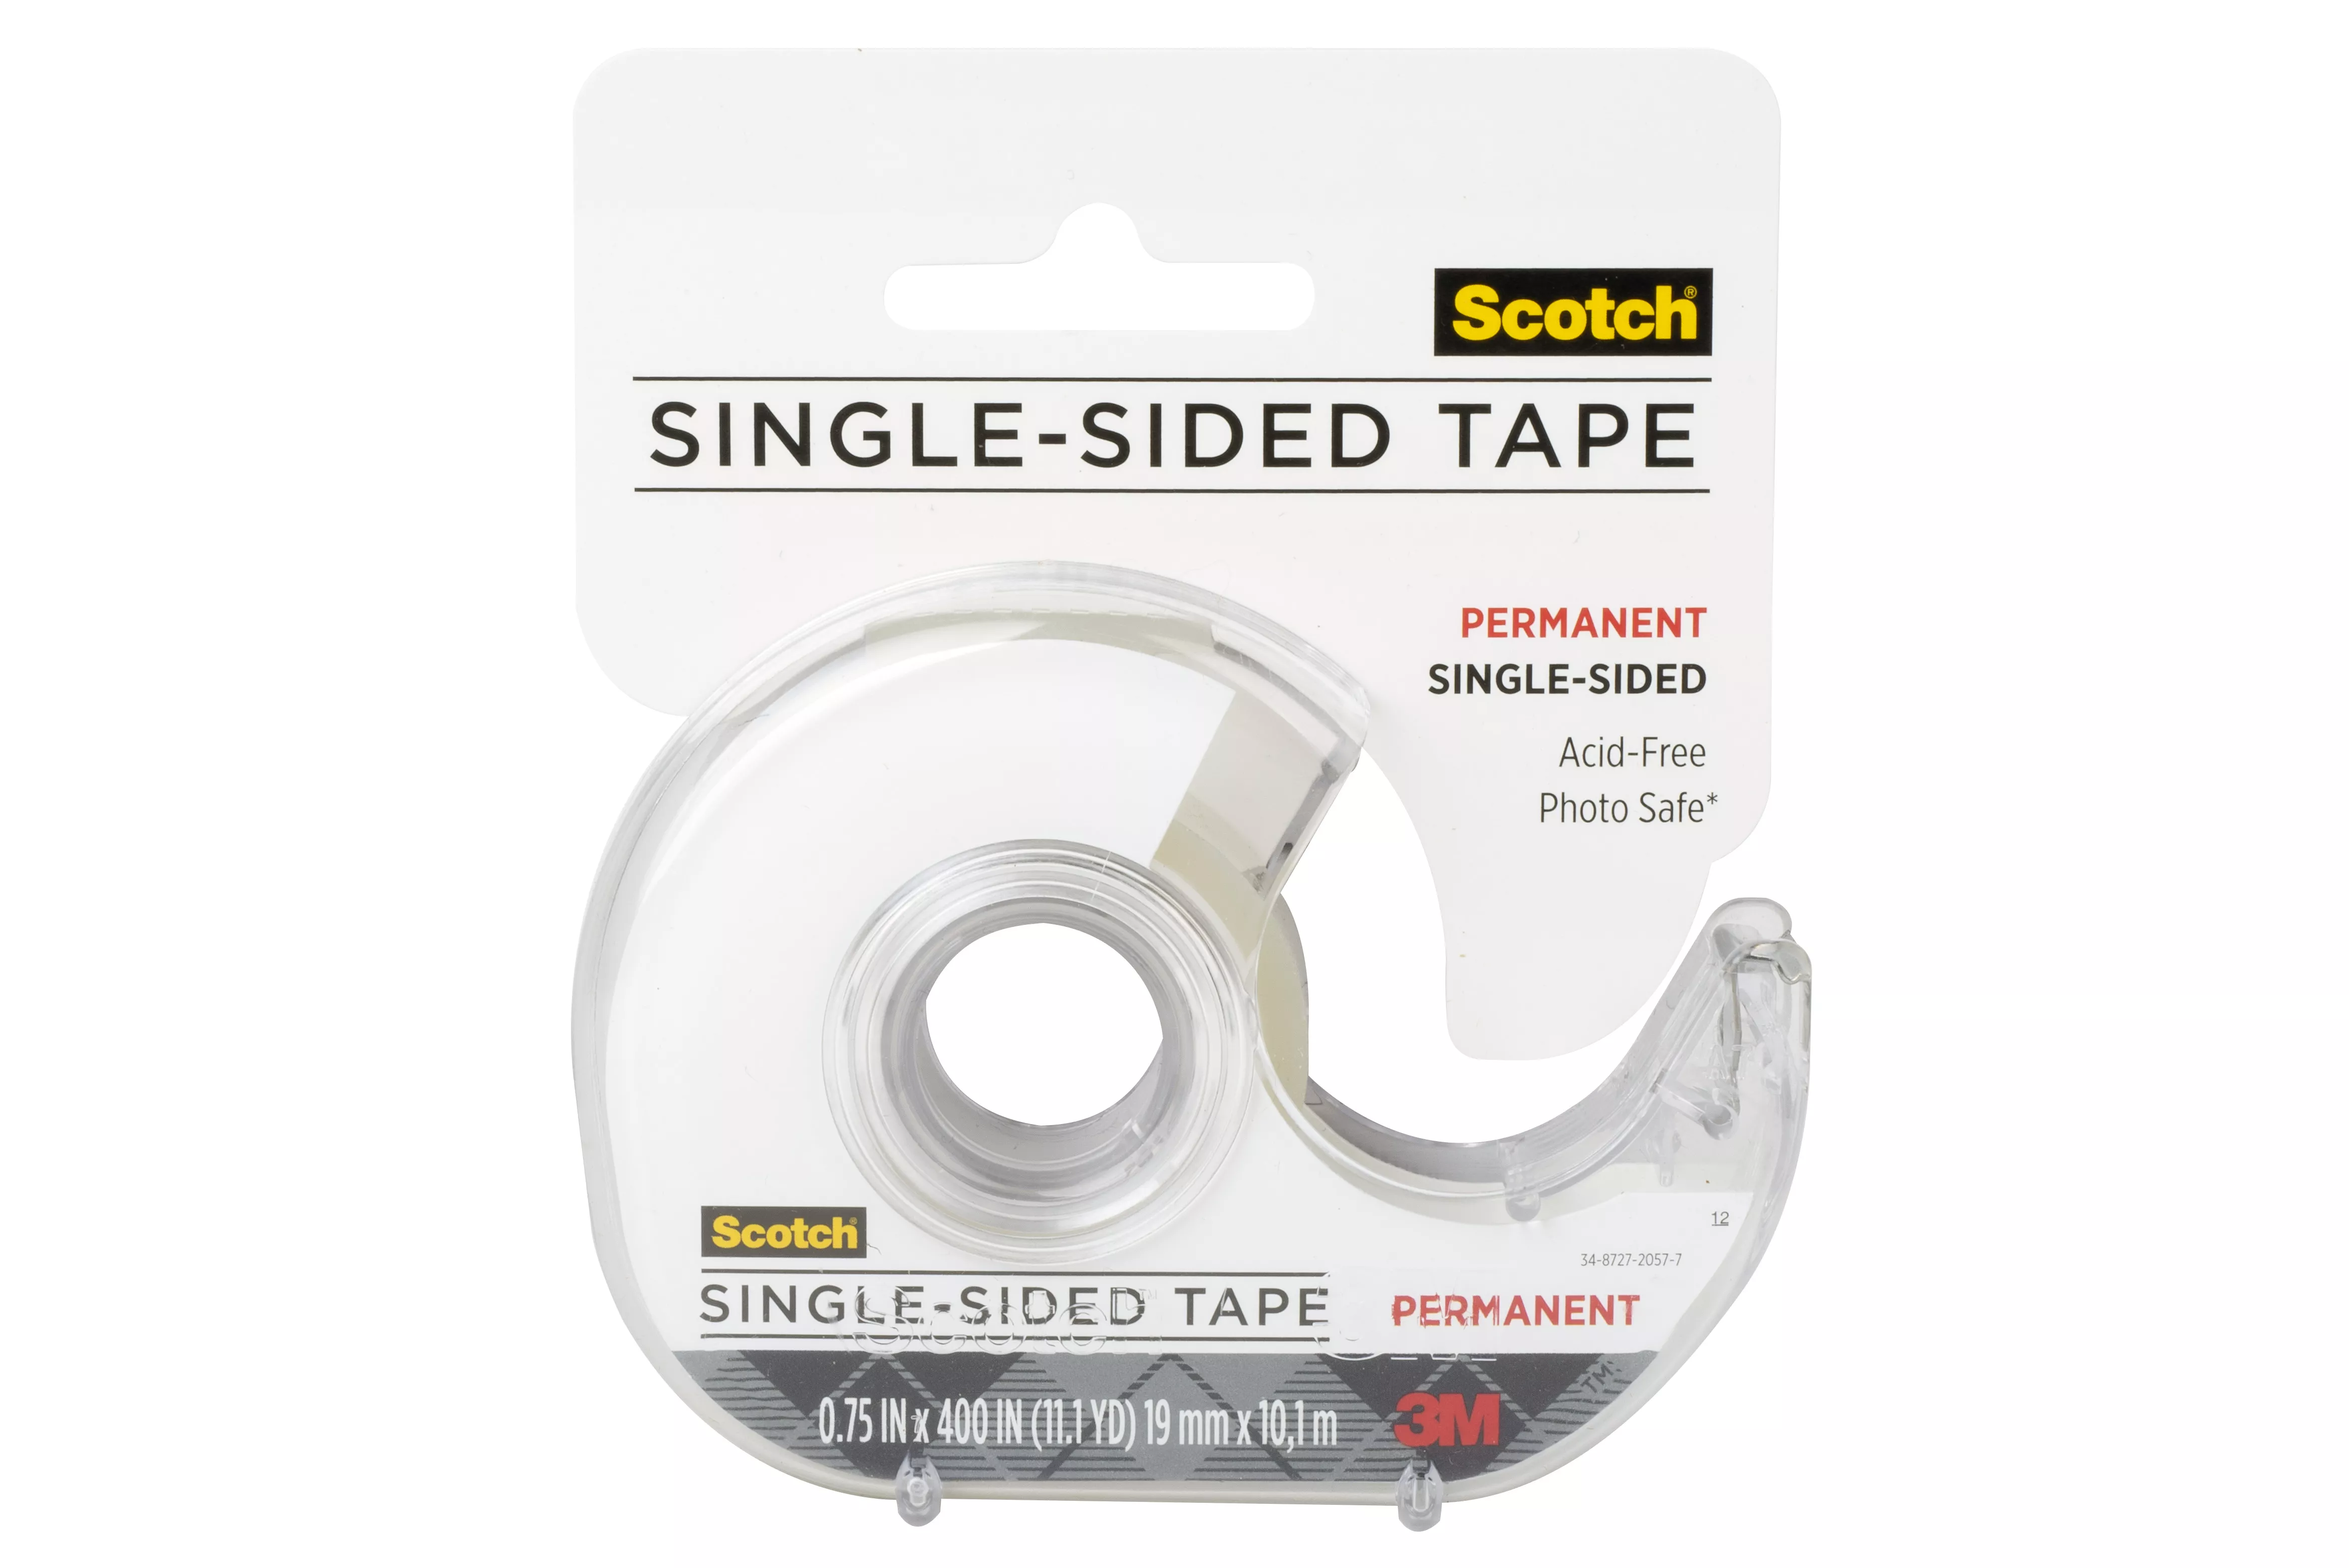 SKU 7010333586 | Scotch® Tape Single Sided 001-CFT